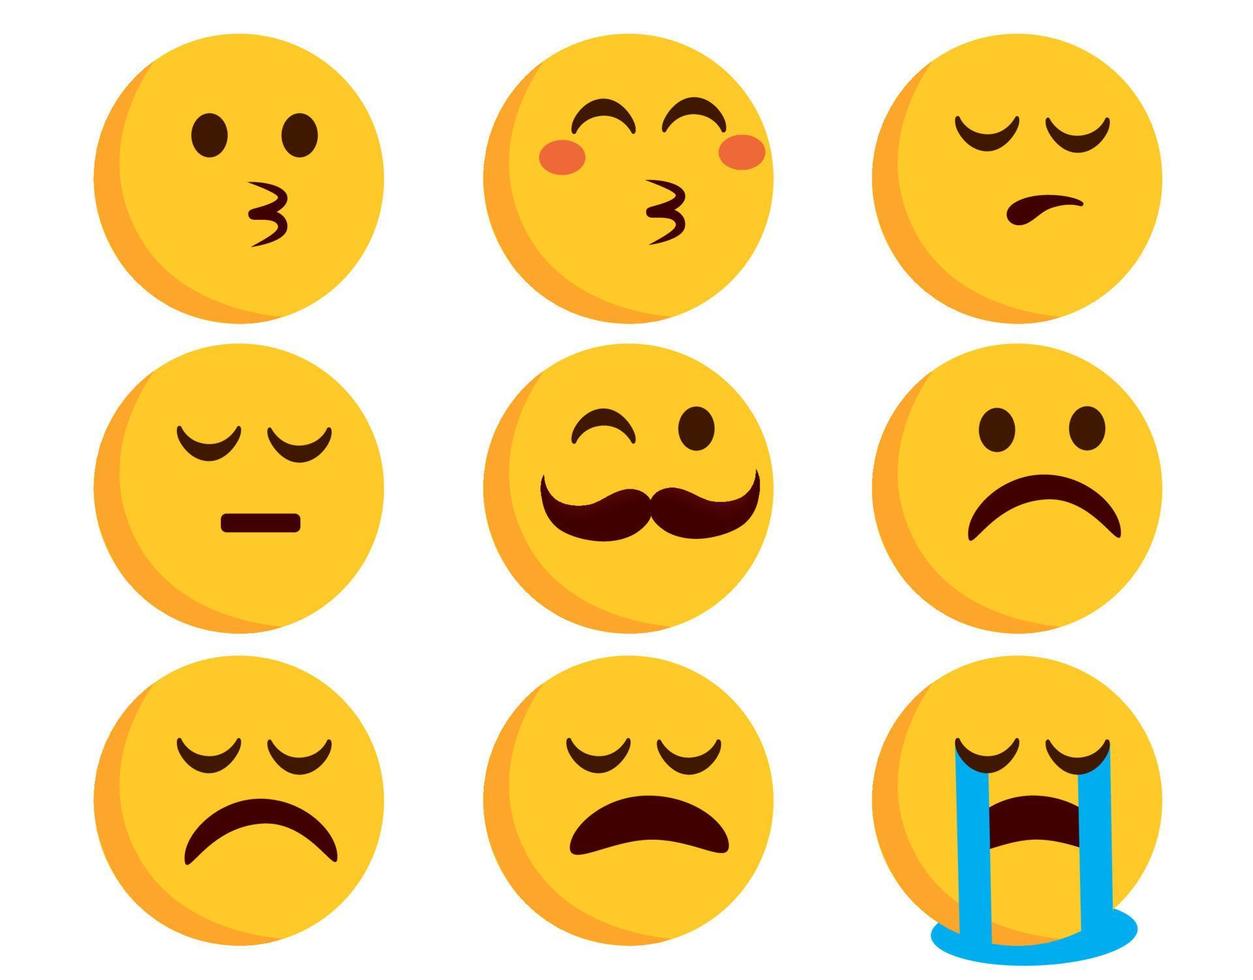 emojis plana conjunto de vetores de emoticons. personagens de emoticons em beijos, choro e expressões de humor triste isoladas no fundo branco para design de personagens emoji. ilustração vetorial.